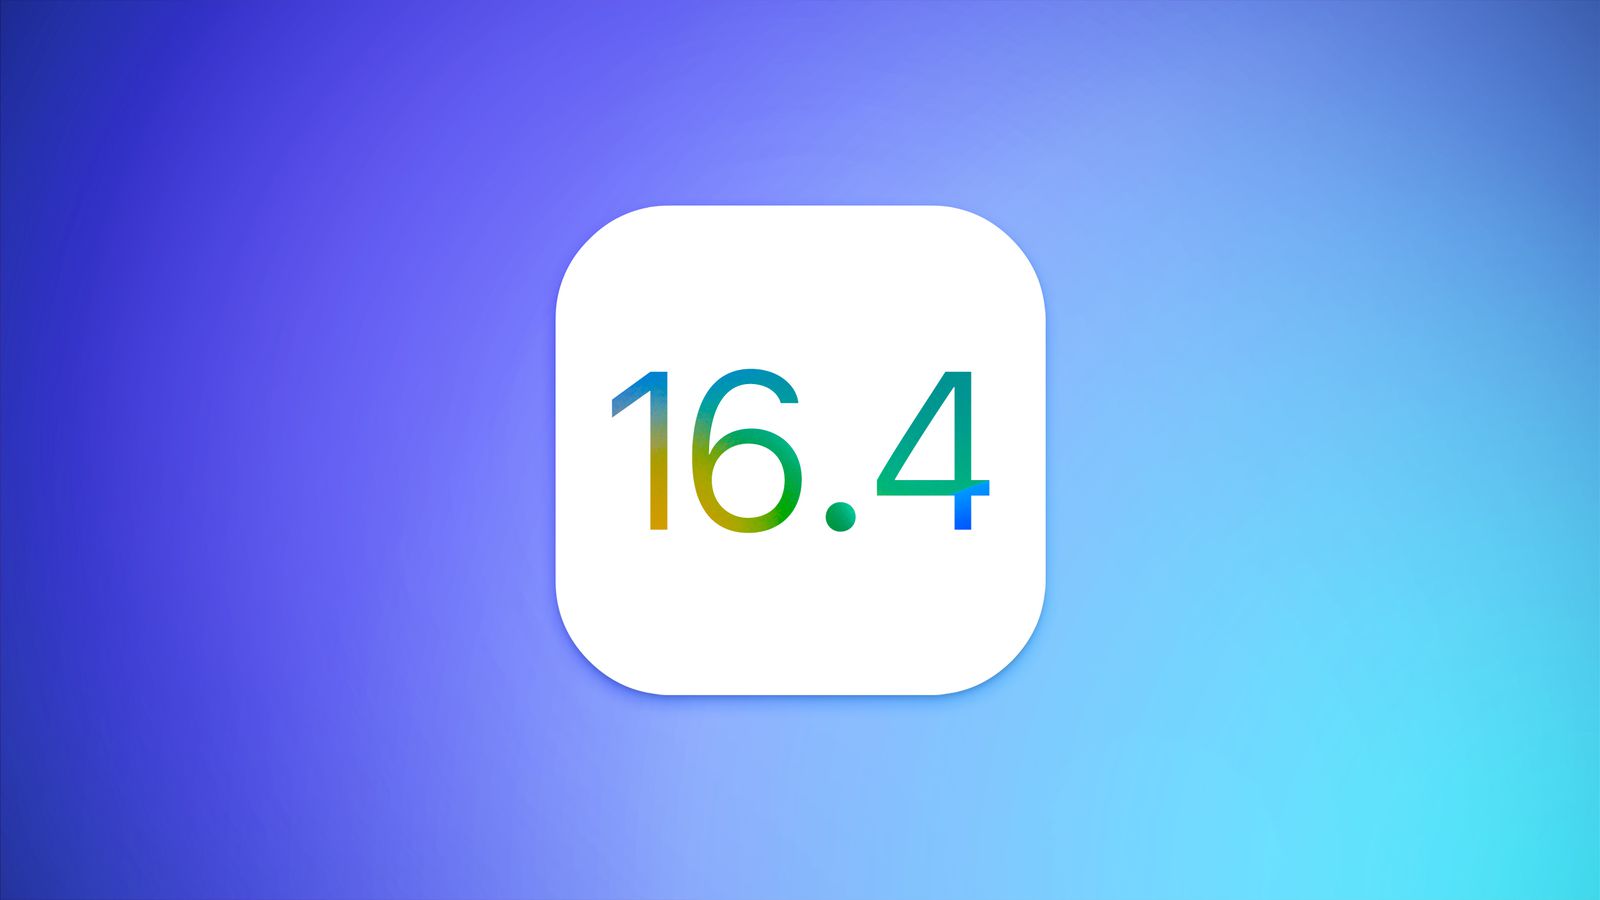 Вышла iOS 16.4 beta 1 для разработчиков. Что нового